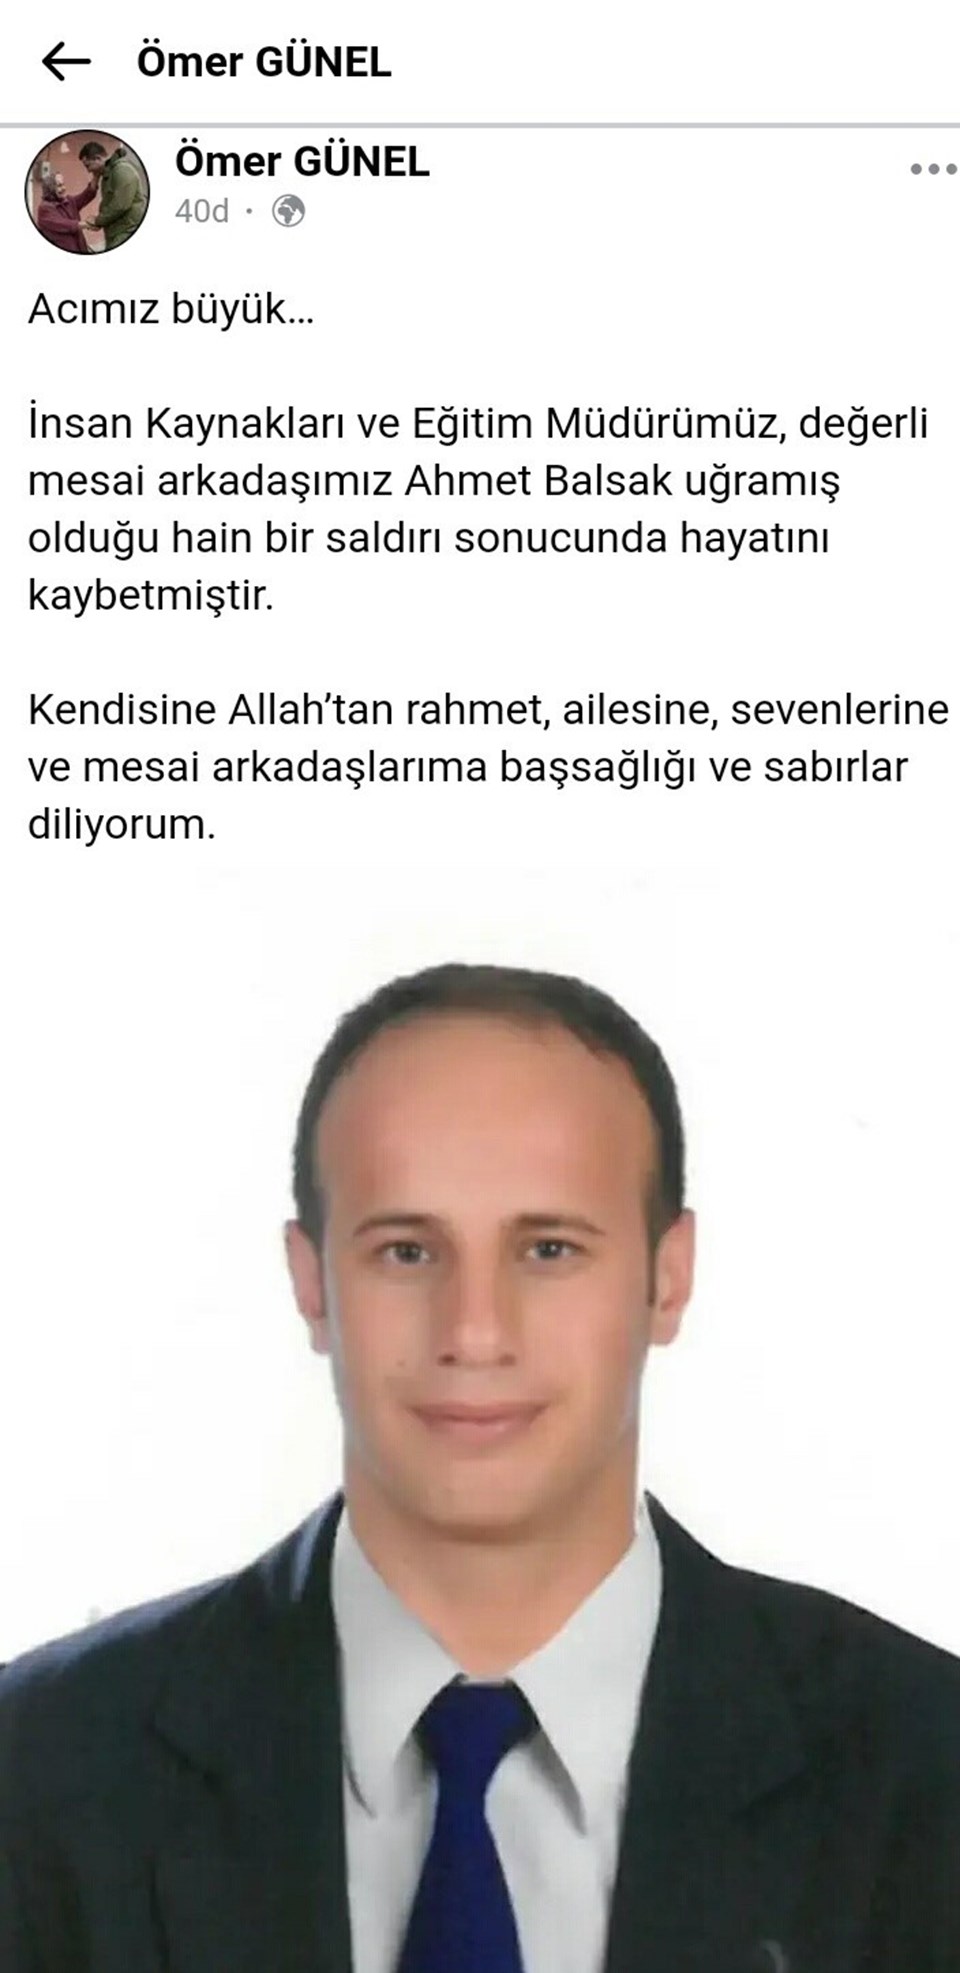 Aydın'ın Kuşadası Belediyesi İnsan Kaynakları ve Eğitim Müdürü Ahmet Balsak (37